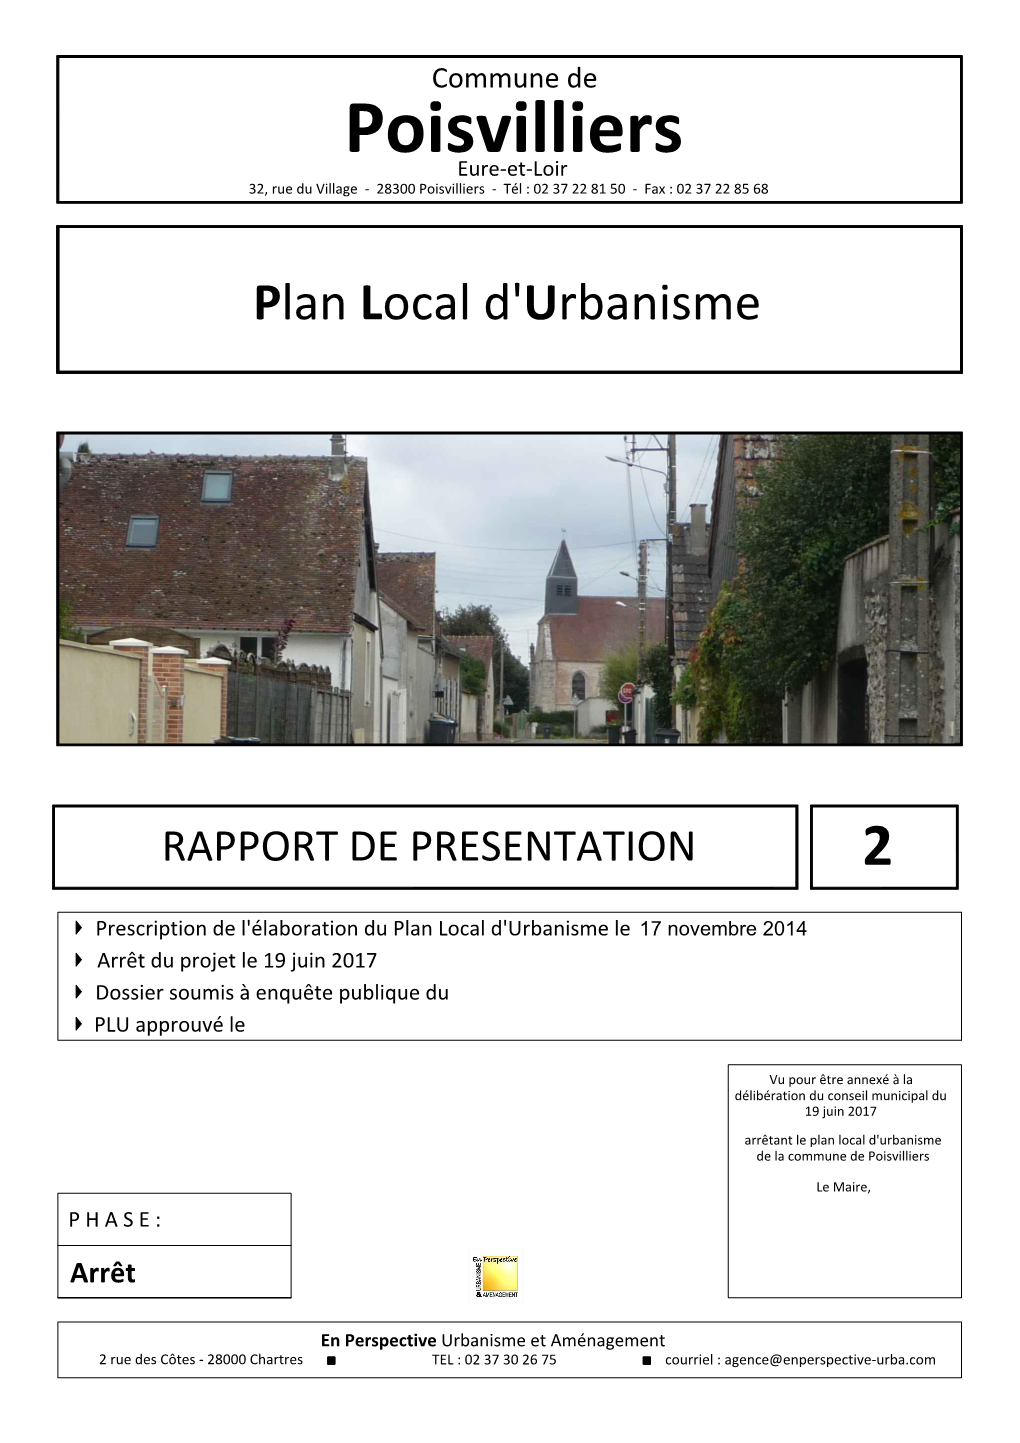 2. Rapport De Présentation